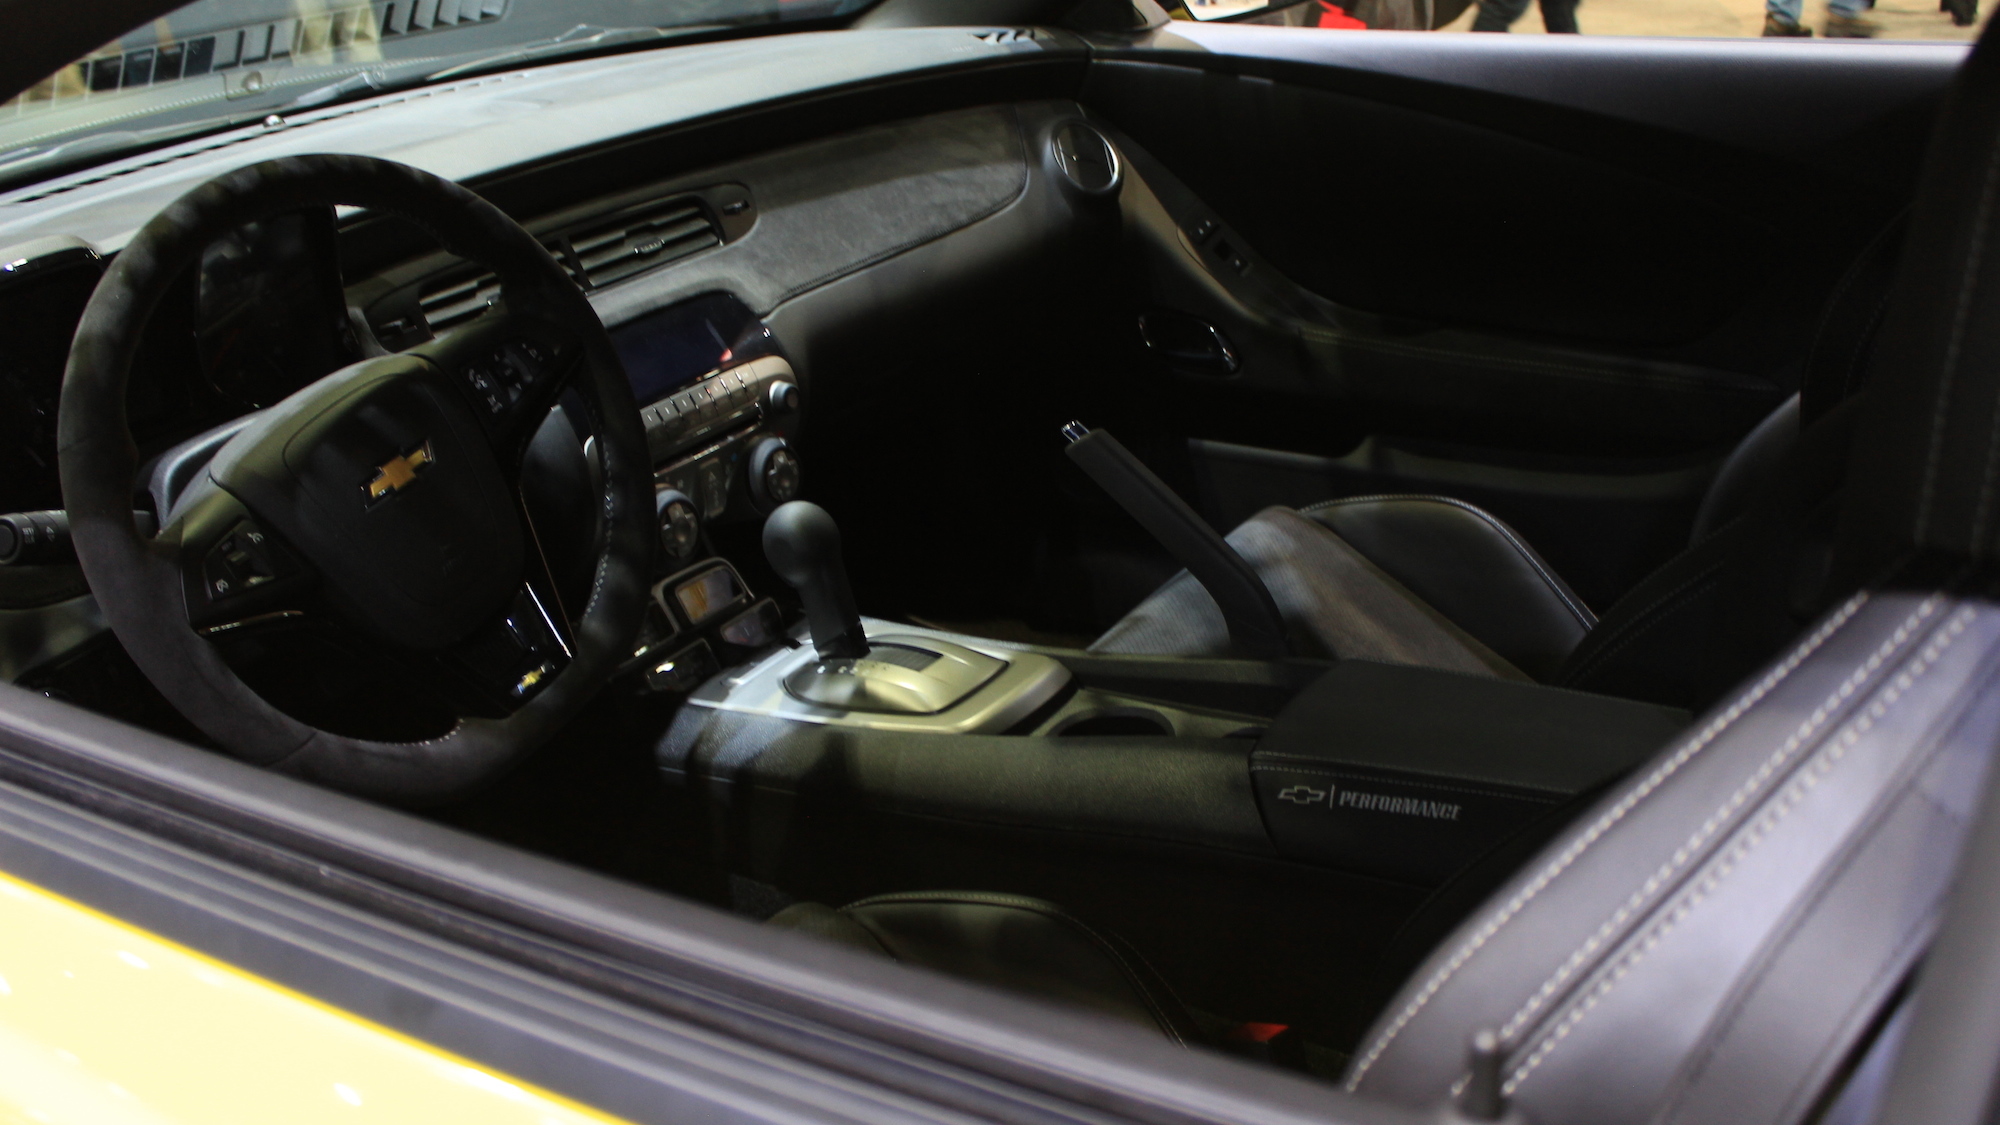 Chevrolet Performance Camaro V6 Concept, 2013 SEMA Show